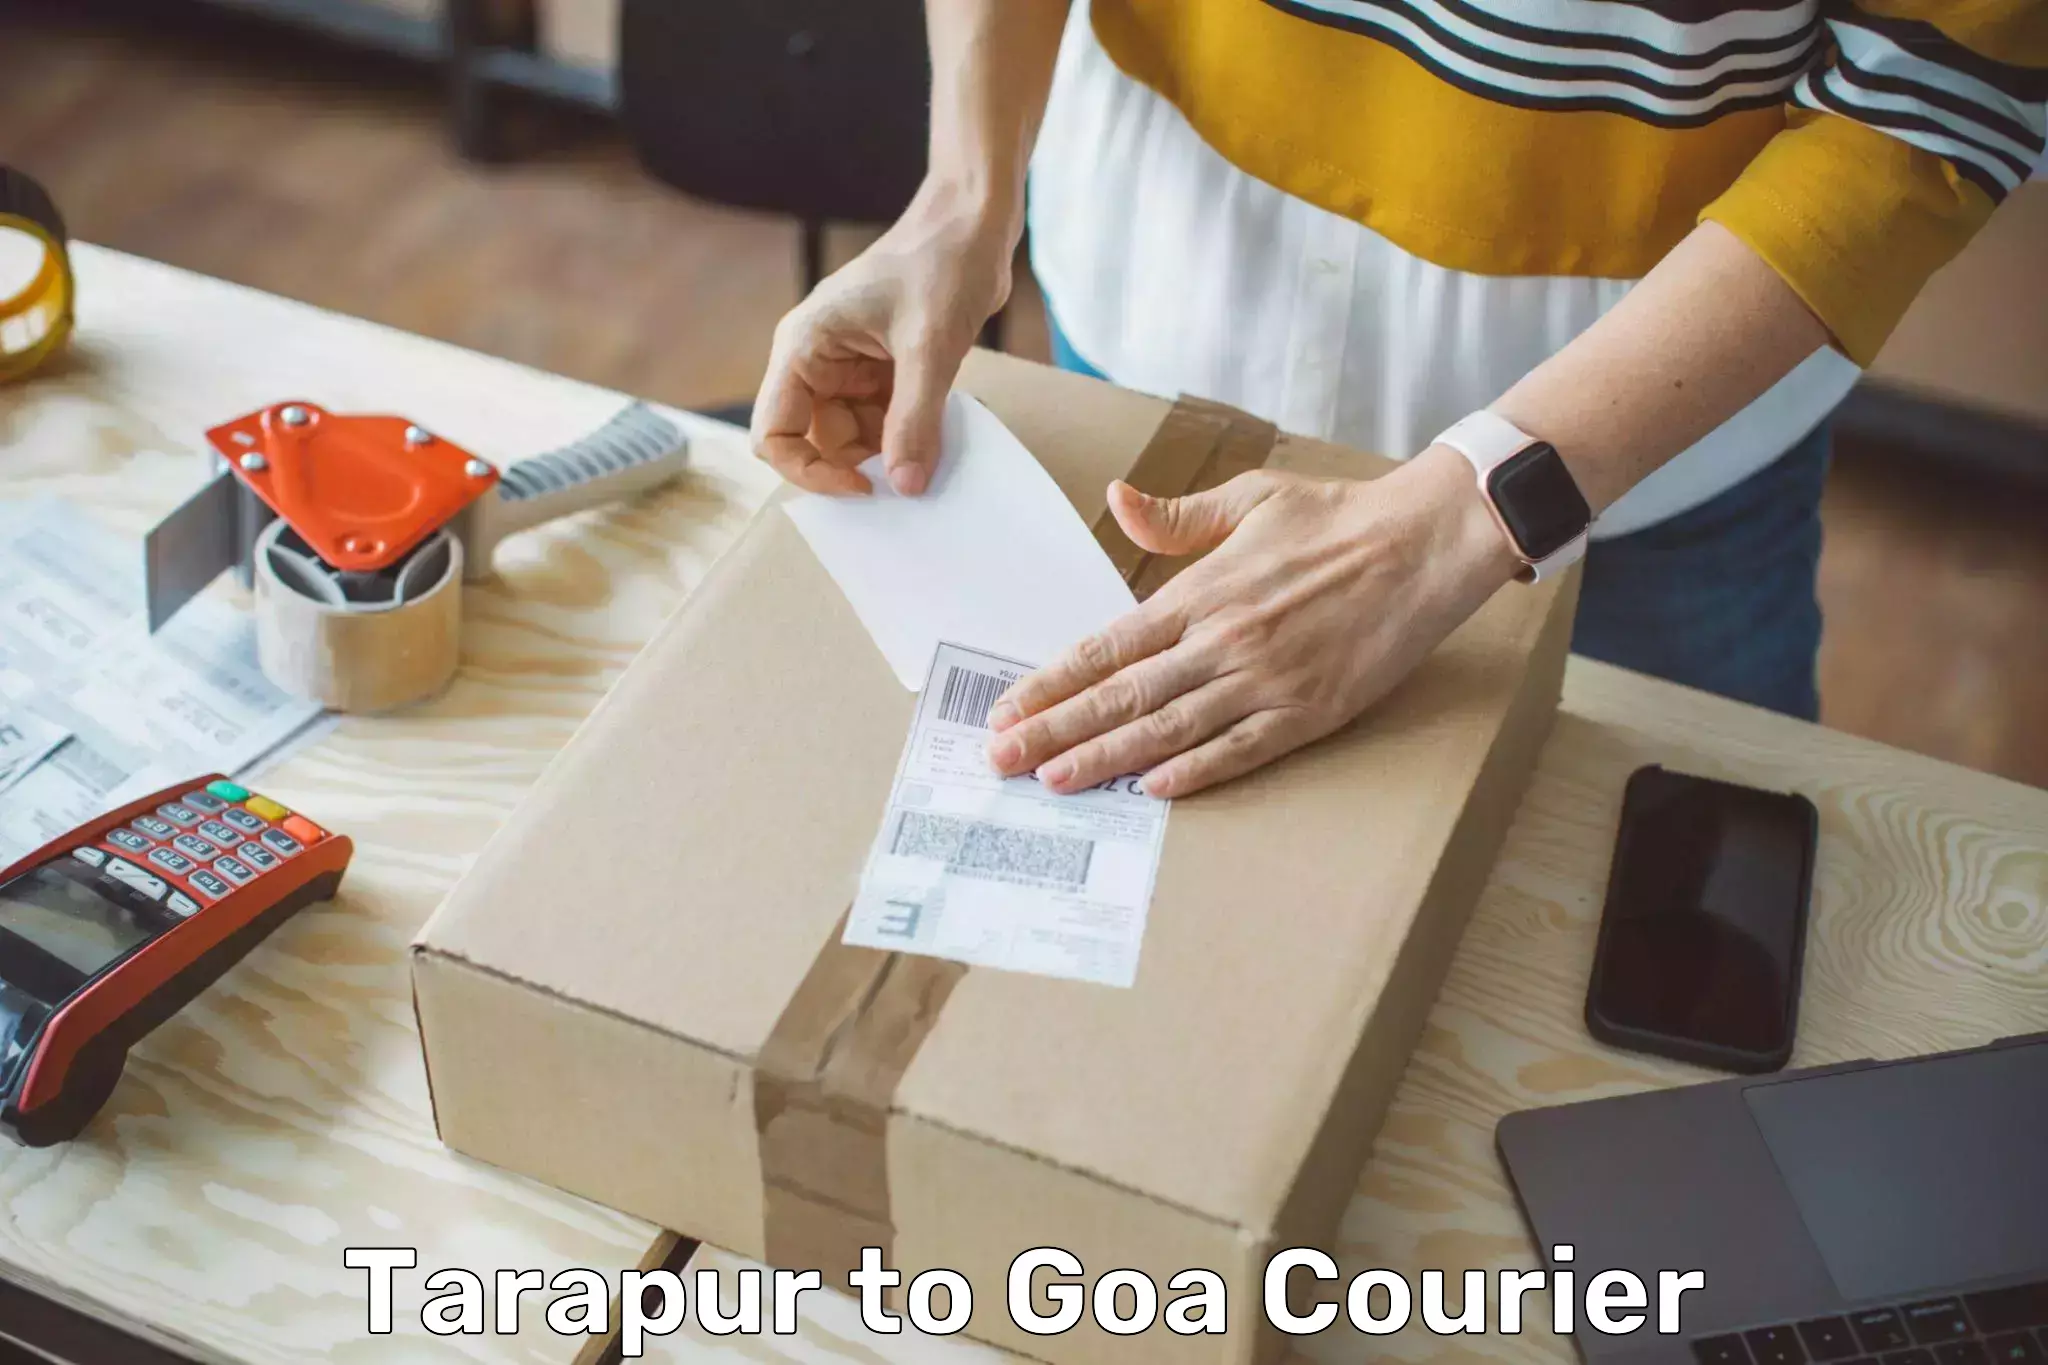 Efficient courier operations Tarapur to Vasco da Gama